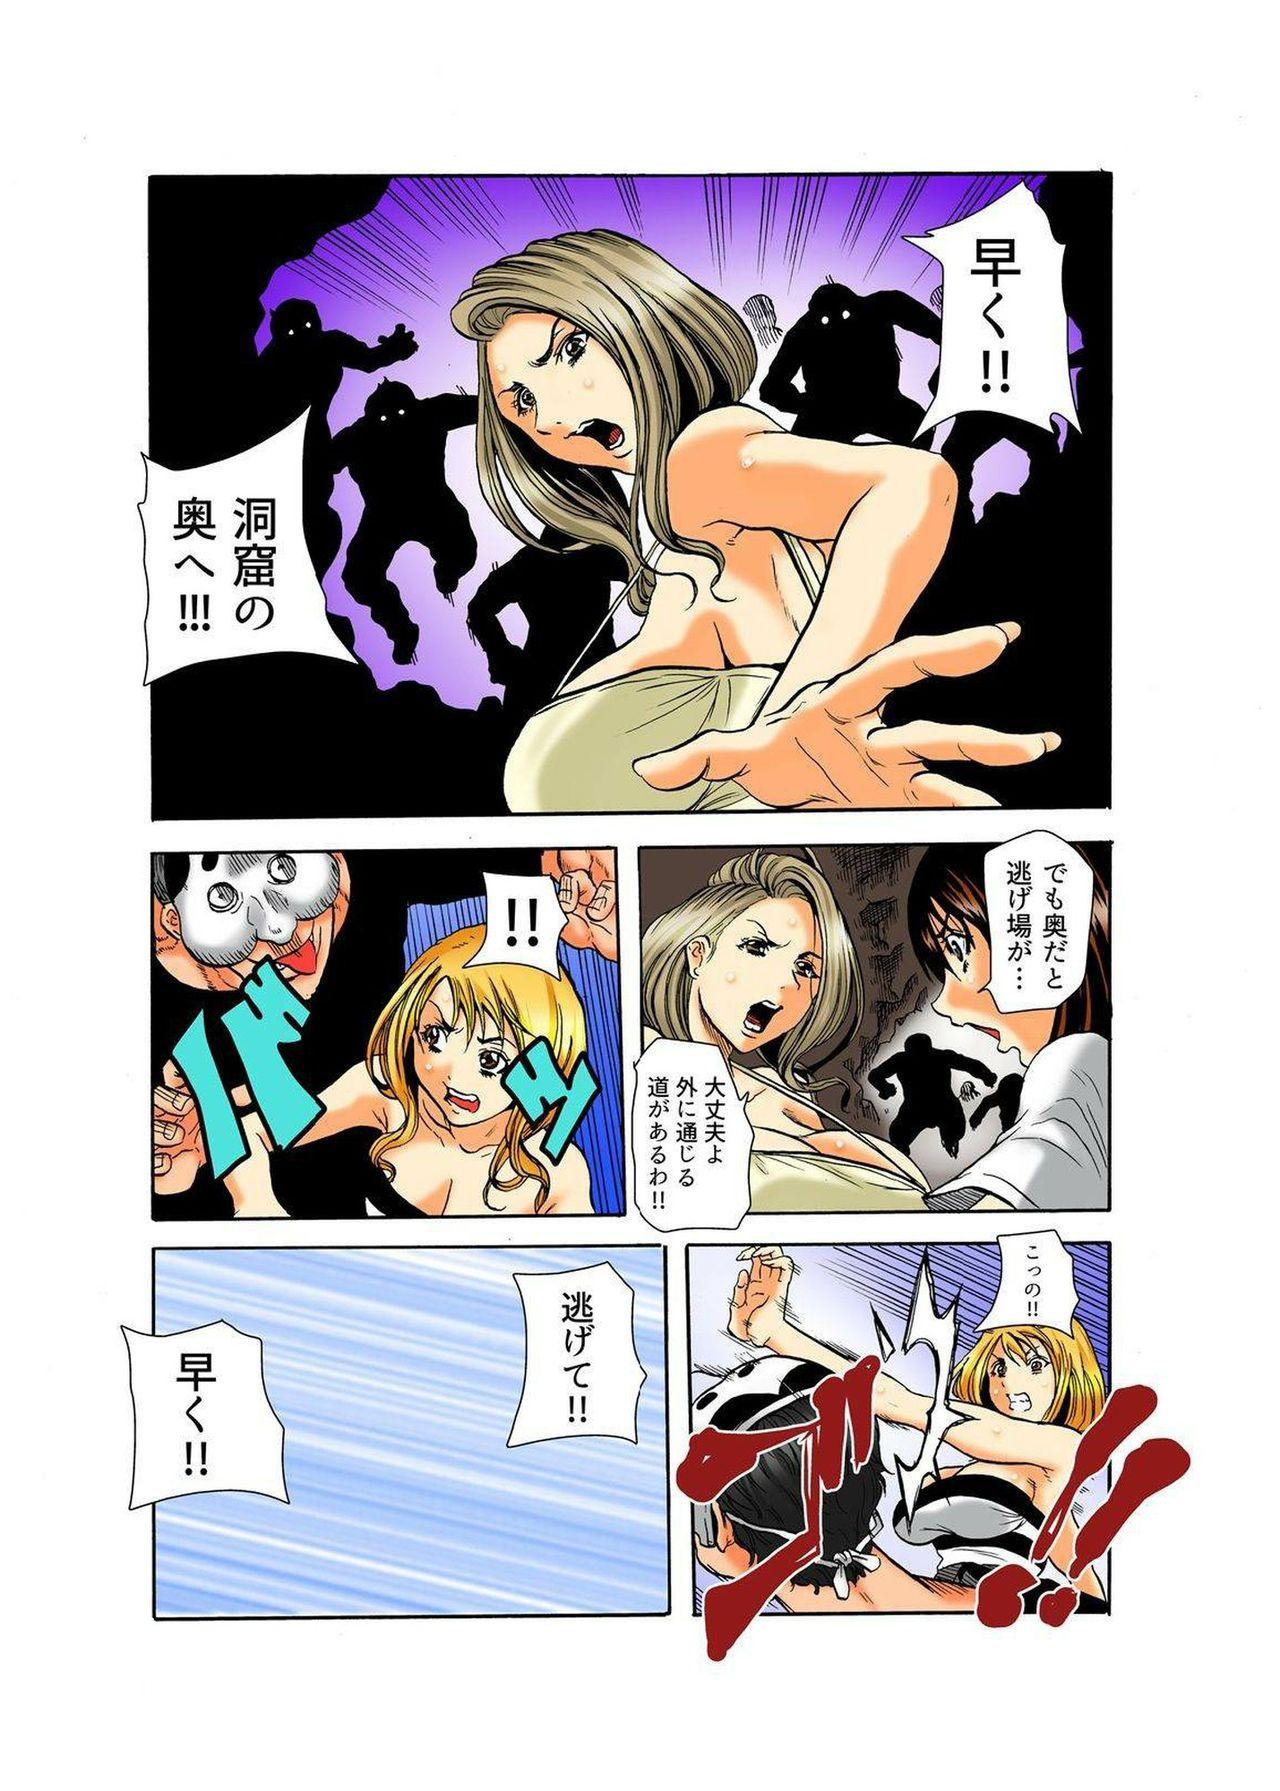 Couch Real Kichiku Gokko - Isshuukan Kono Shima de Oni kara Nigekire 4 Pica - Page 10